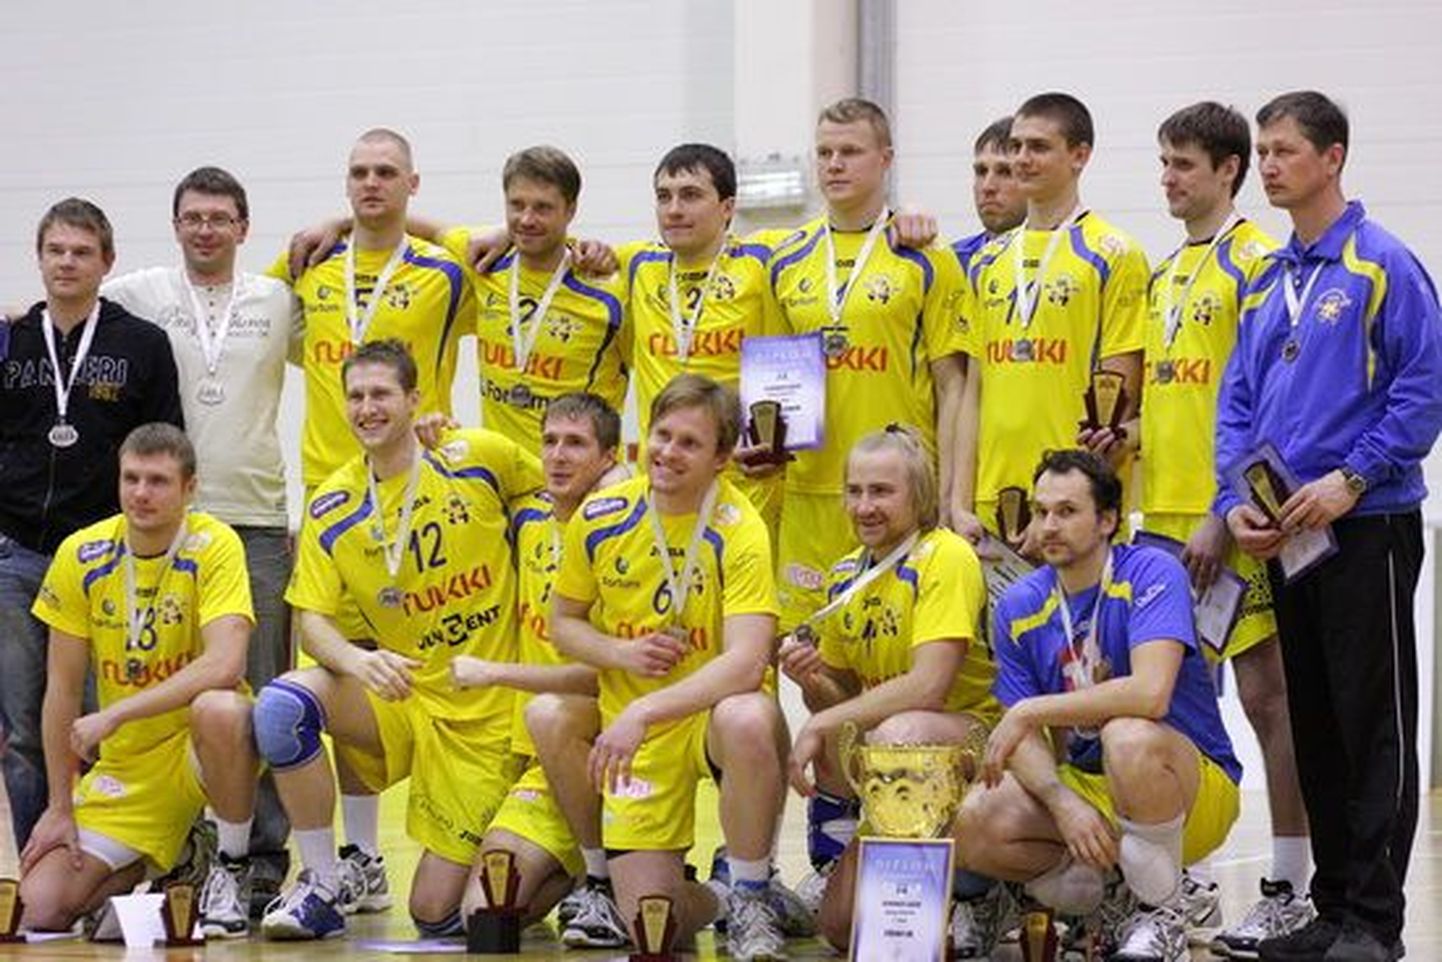 Pärnu linn premeeris Schenkeri liigas finaali jõudnud Pärnu võrkpalliklubi meeskonda 2000 euroga.